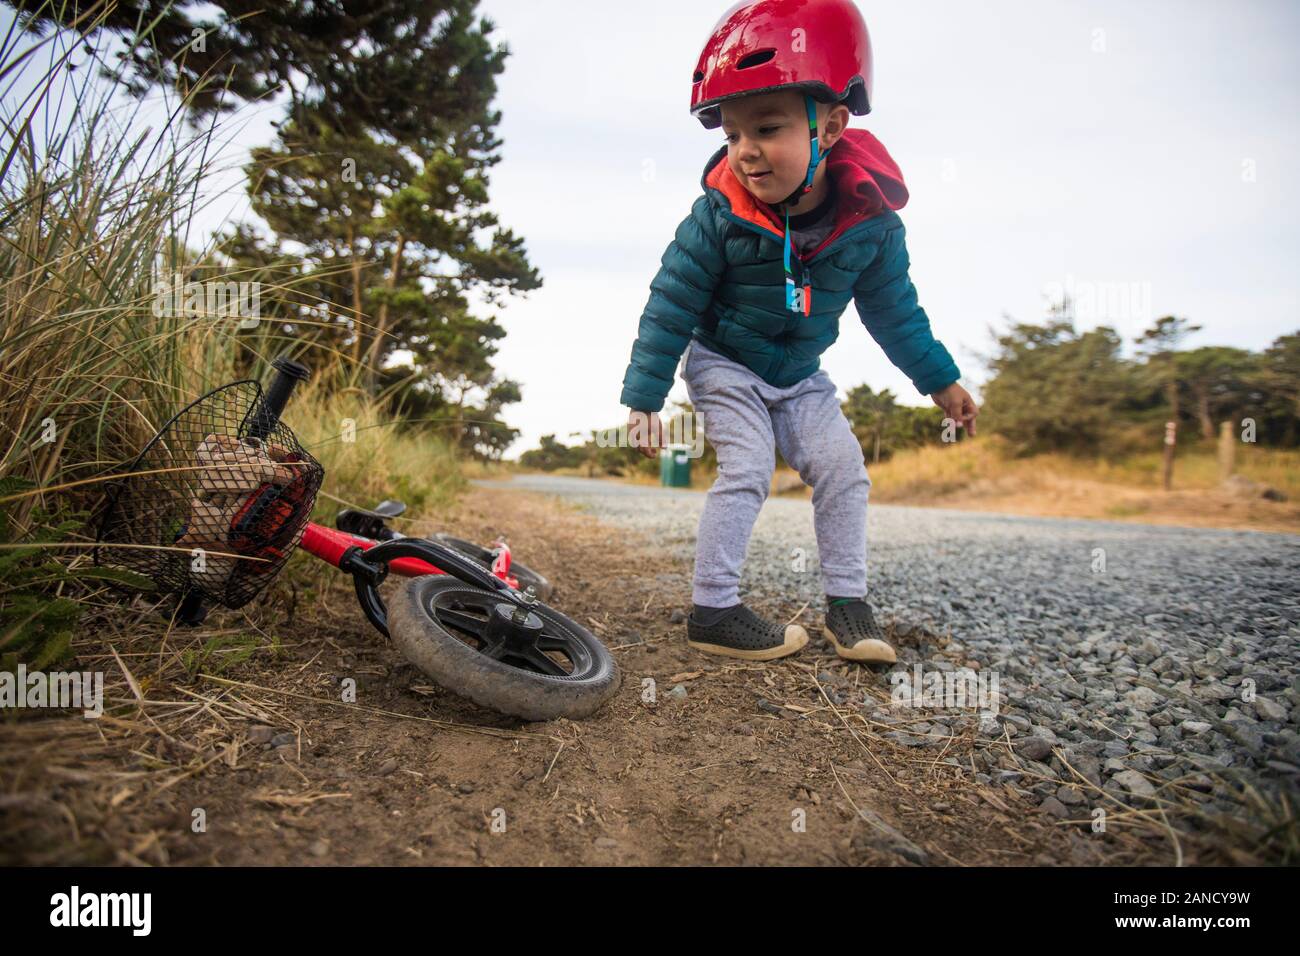 Kleinkind Junge lehnt sich rüber, um Fahrrad zu holen. Stockfoto